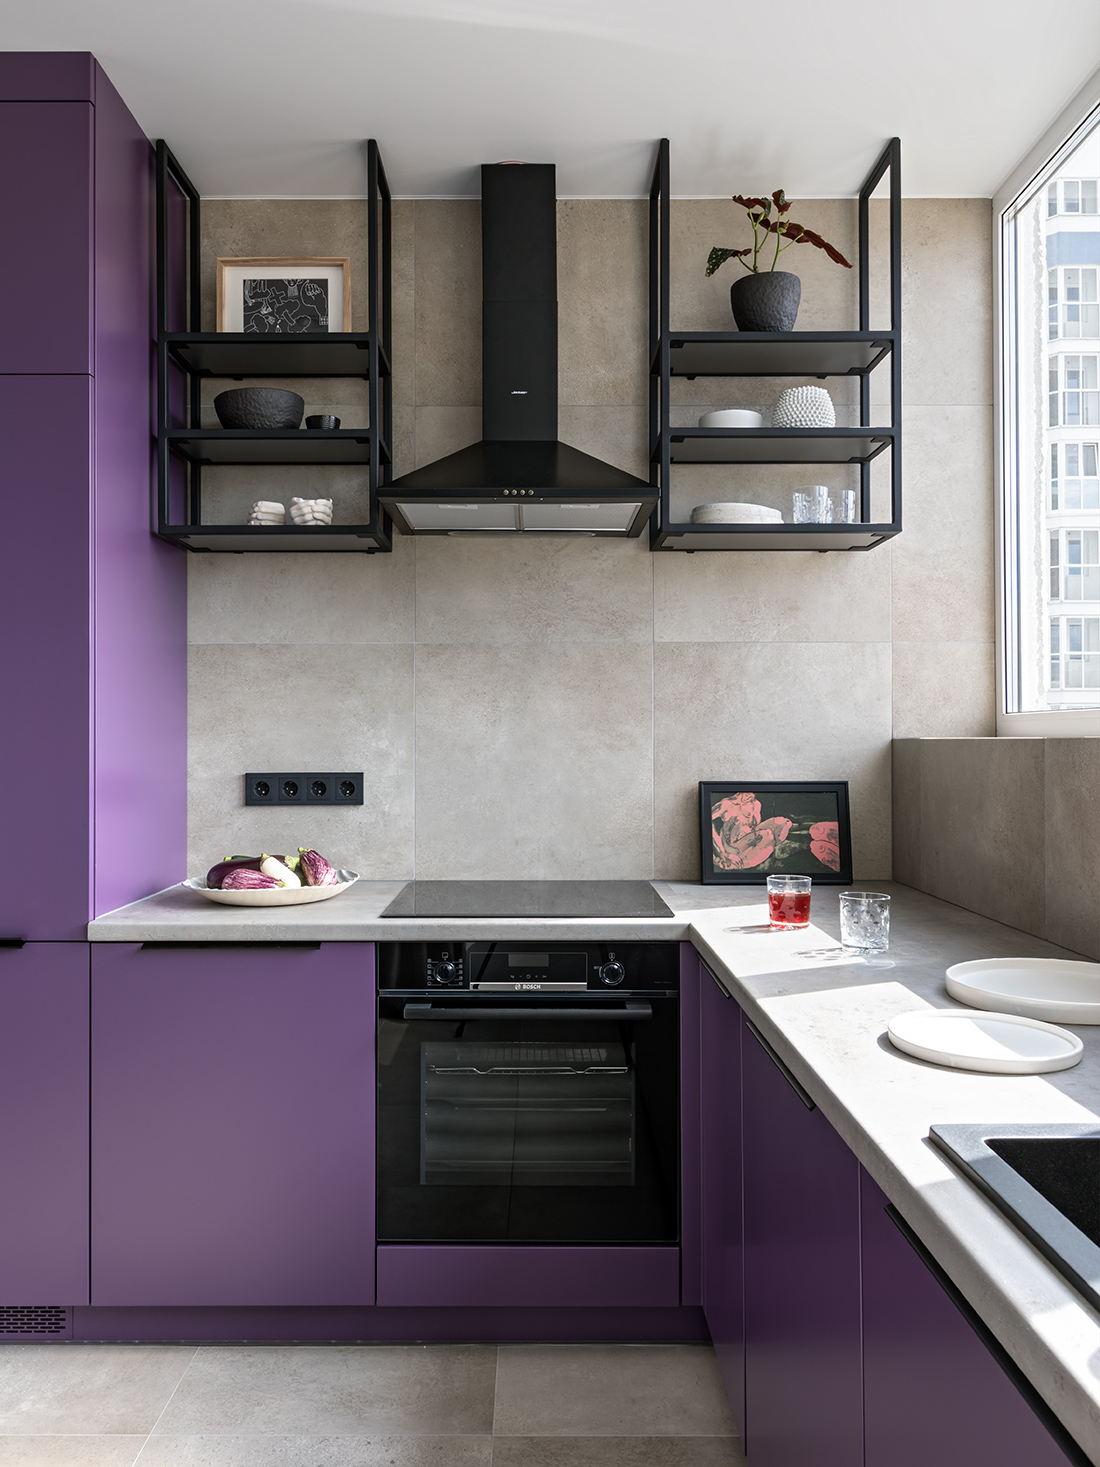 Phòng bếp thiết kế kiểu chữ L lựa chọn hệ tủ lưu trữ màu tím mộng mơ kết hợp với mặt bàn đá màu trắng tạo nên sự tương phản đẹp mắt. Sự phối hợp với gạch ốp lát sàn và tường màu be nhạt cũng là lựa chọn khéo léo cho bếp nhỏ thêm nổi bật.